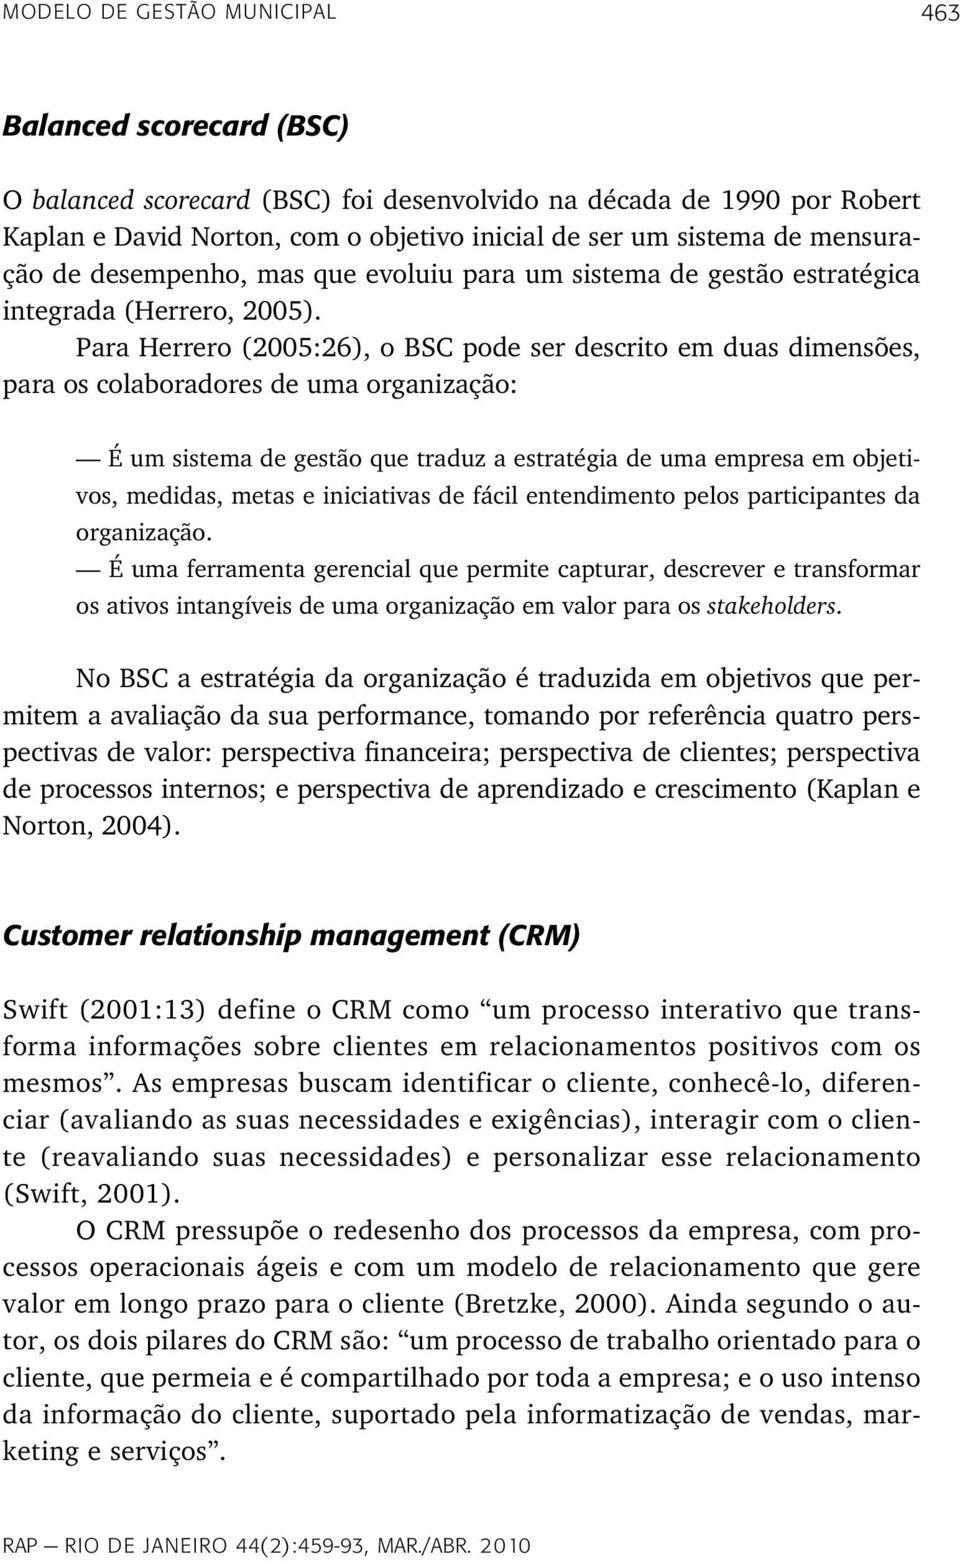 Para Herrero (2005:26), o BSC pode ser descrito em duas dimensões, para os colaboradores de uma organização: É um sistema de gestão que traduz a estratégia de uma empresa em objetivos, medidas, metas